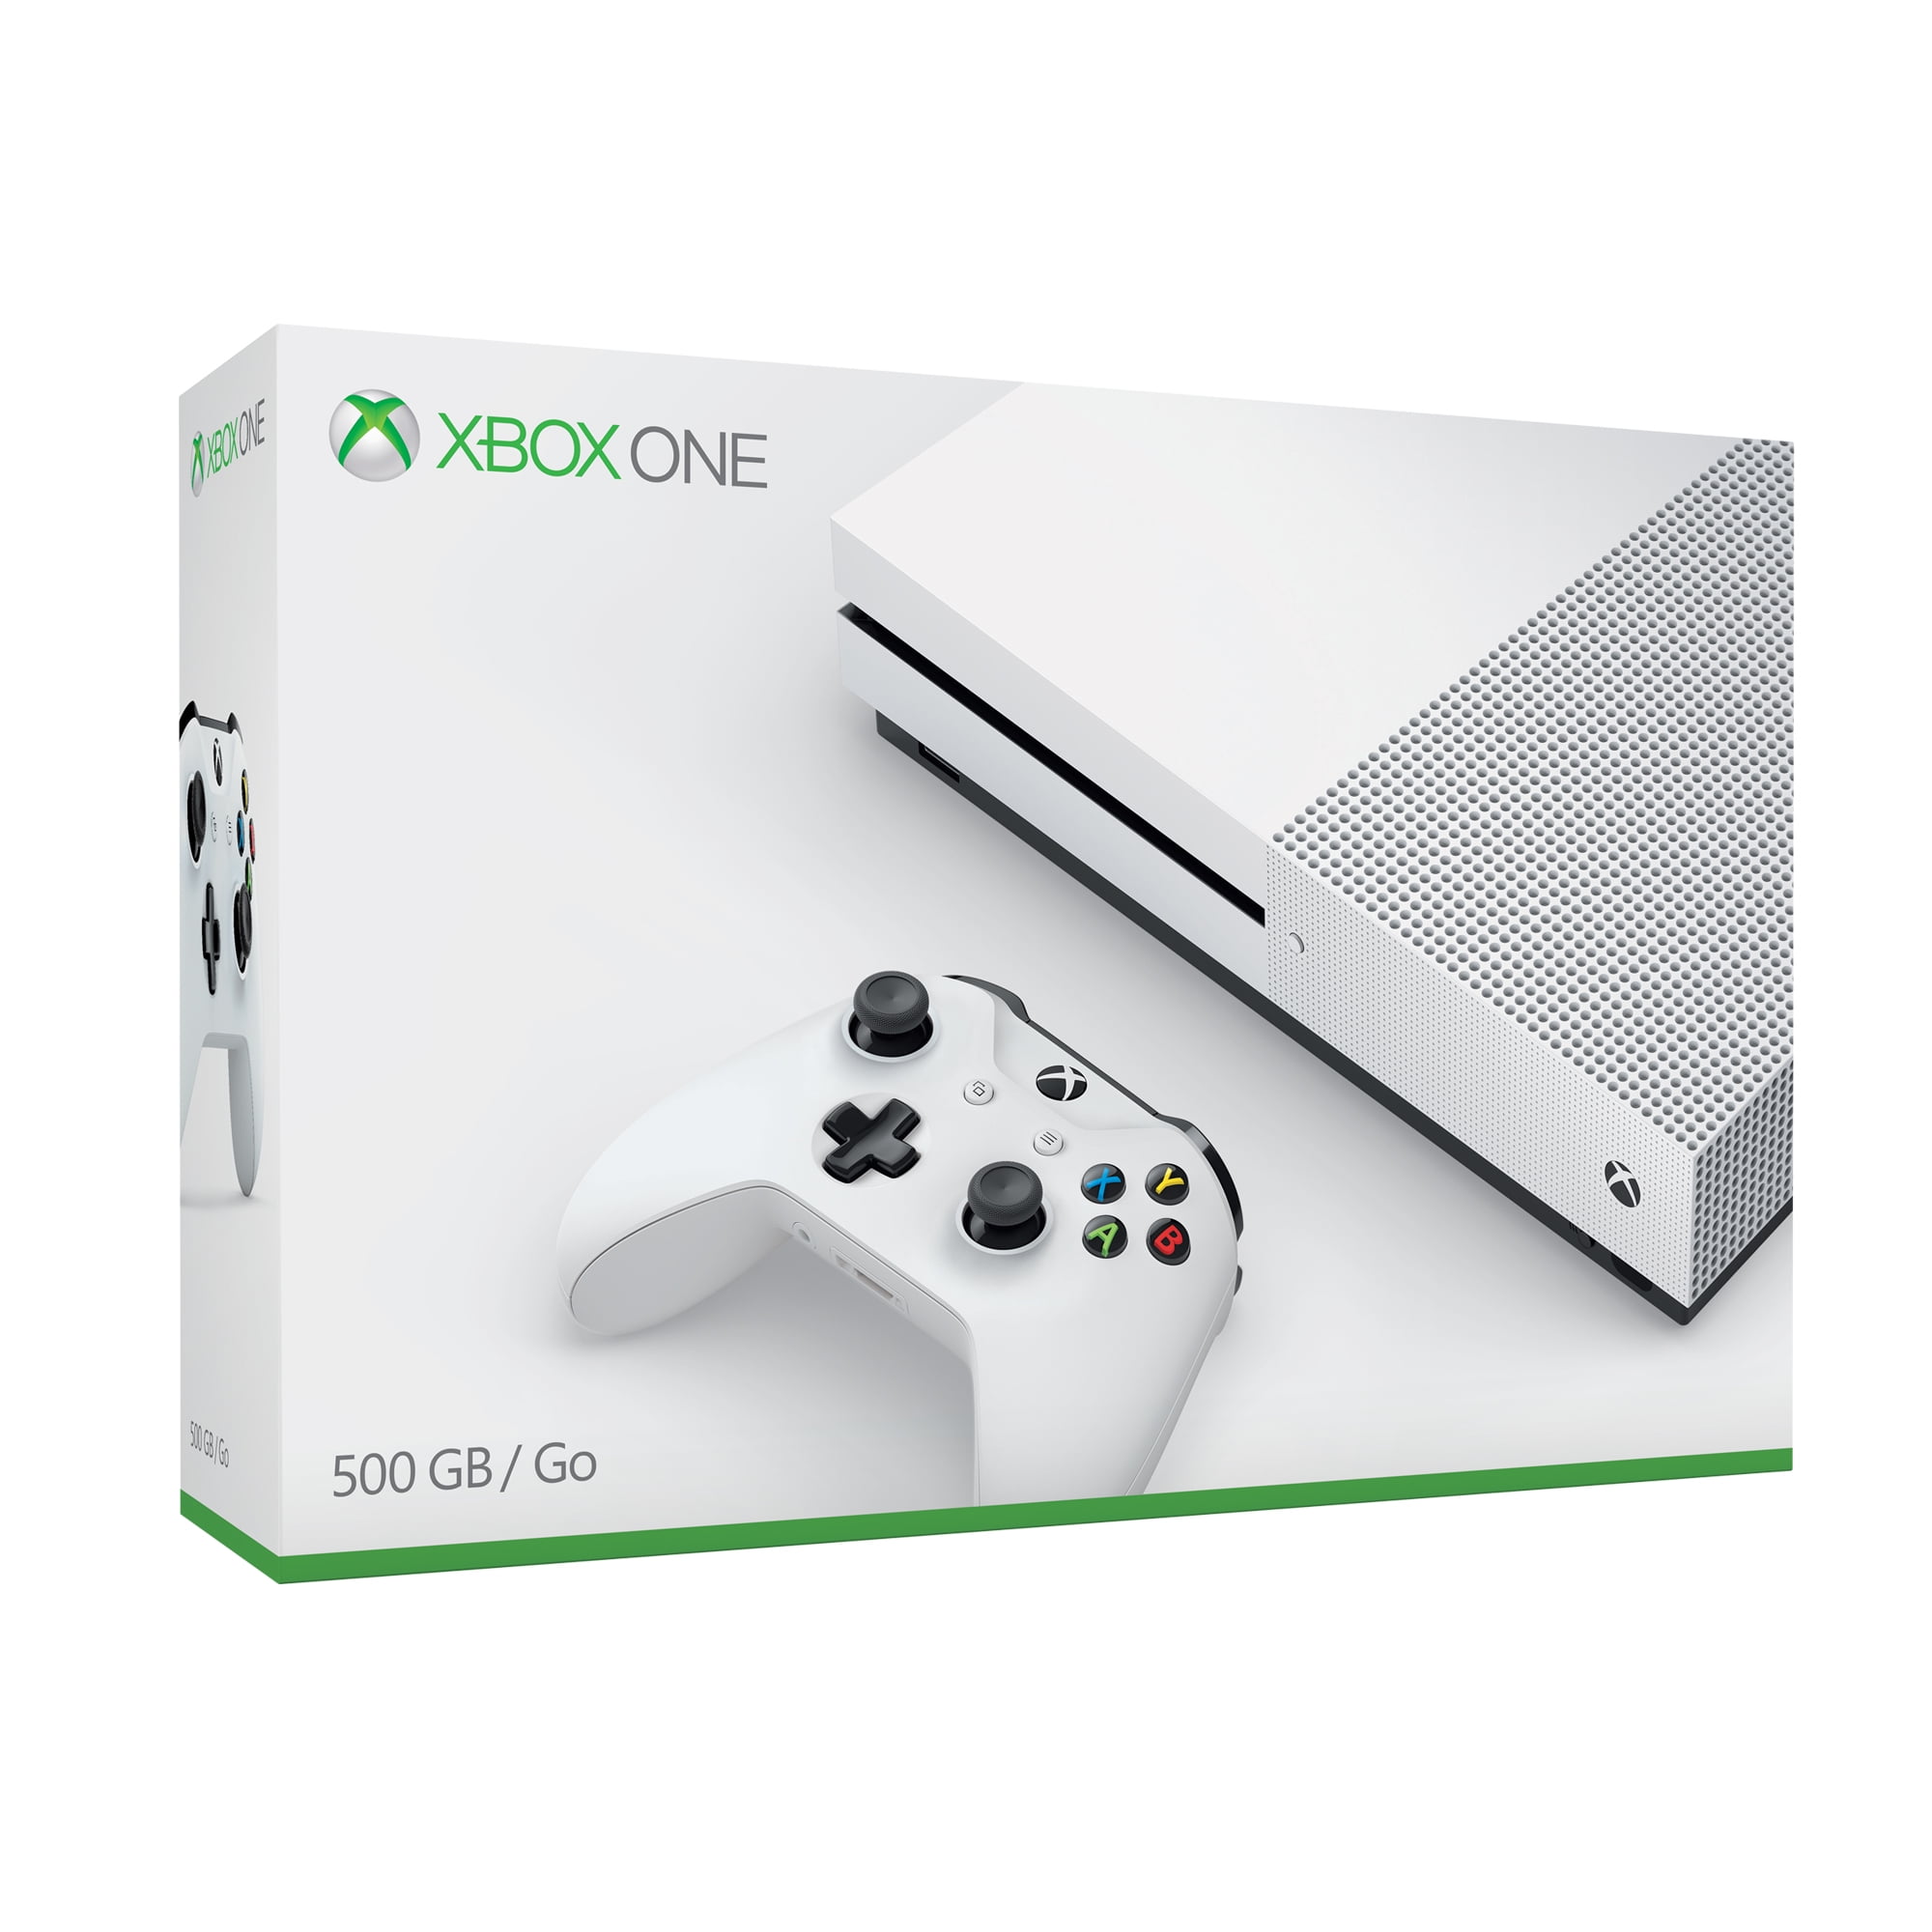 Microsoft Xbox One S 500gb Console White Zq9 00001 Walmart Com